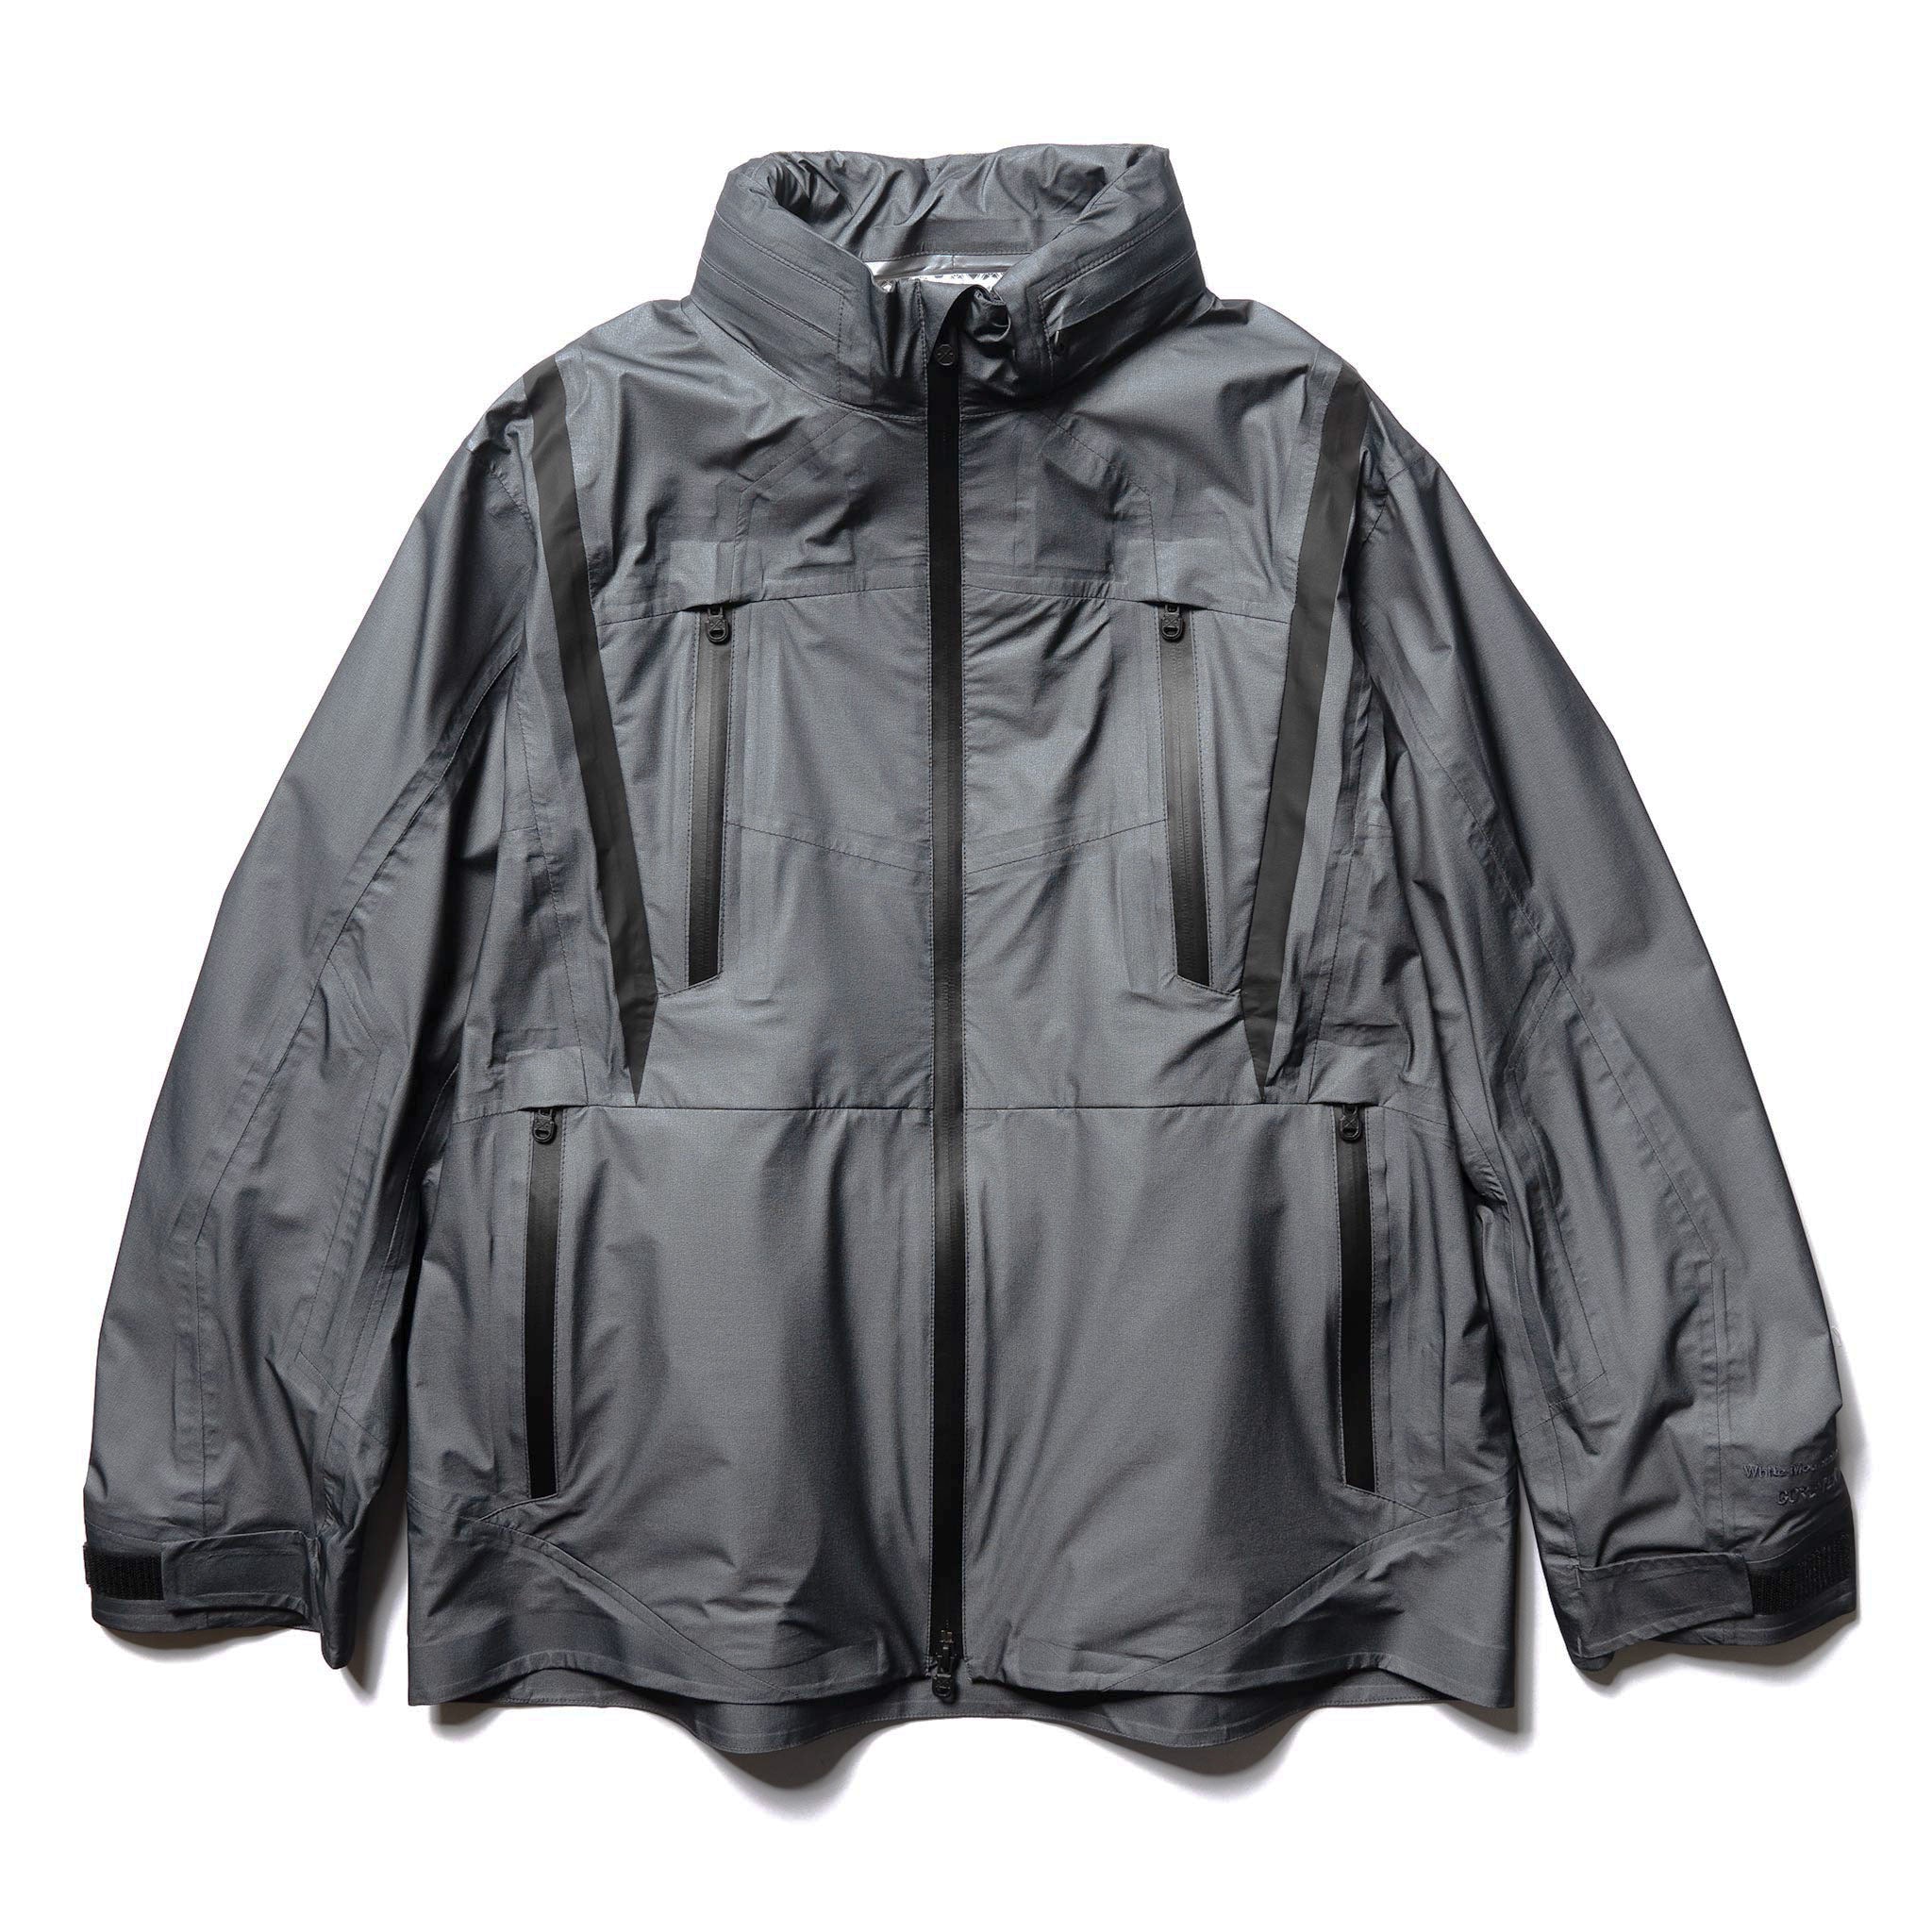 columbia plus size benton springs hooded fleece jacket